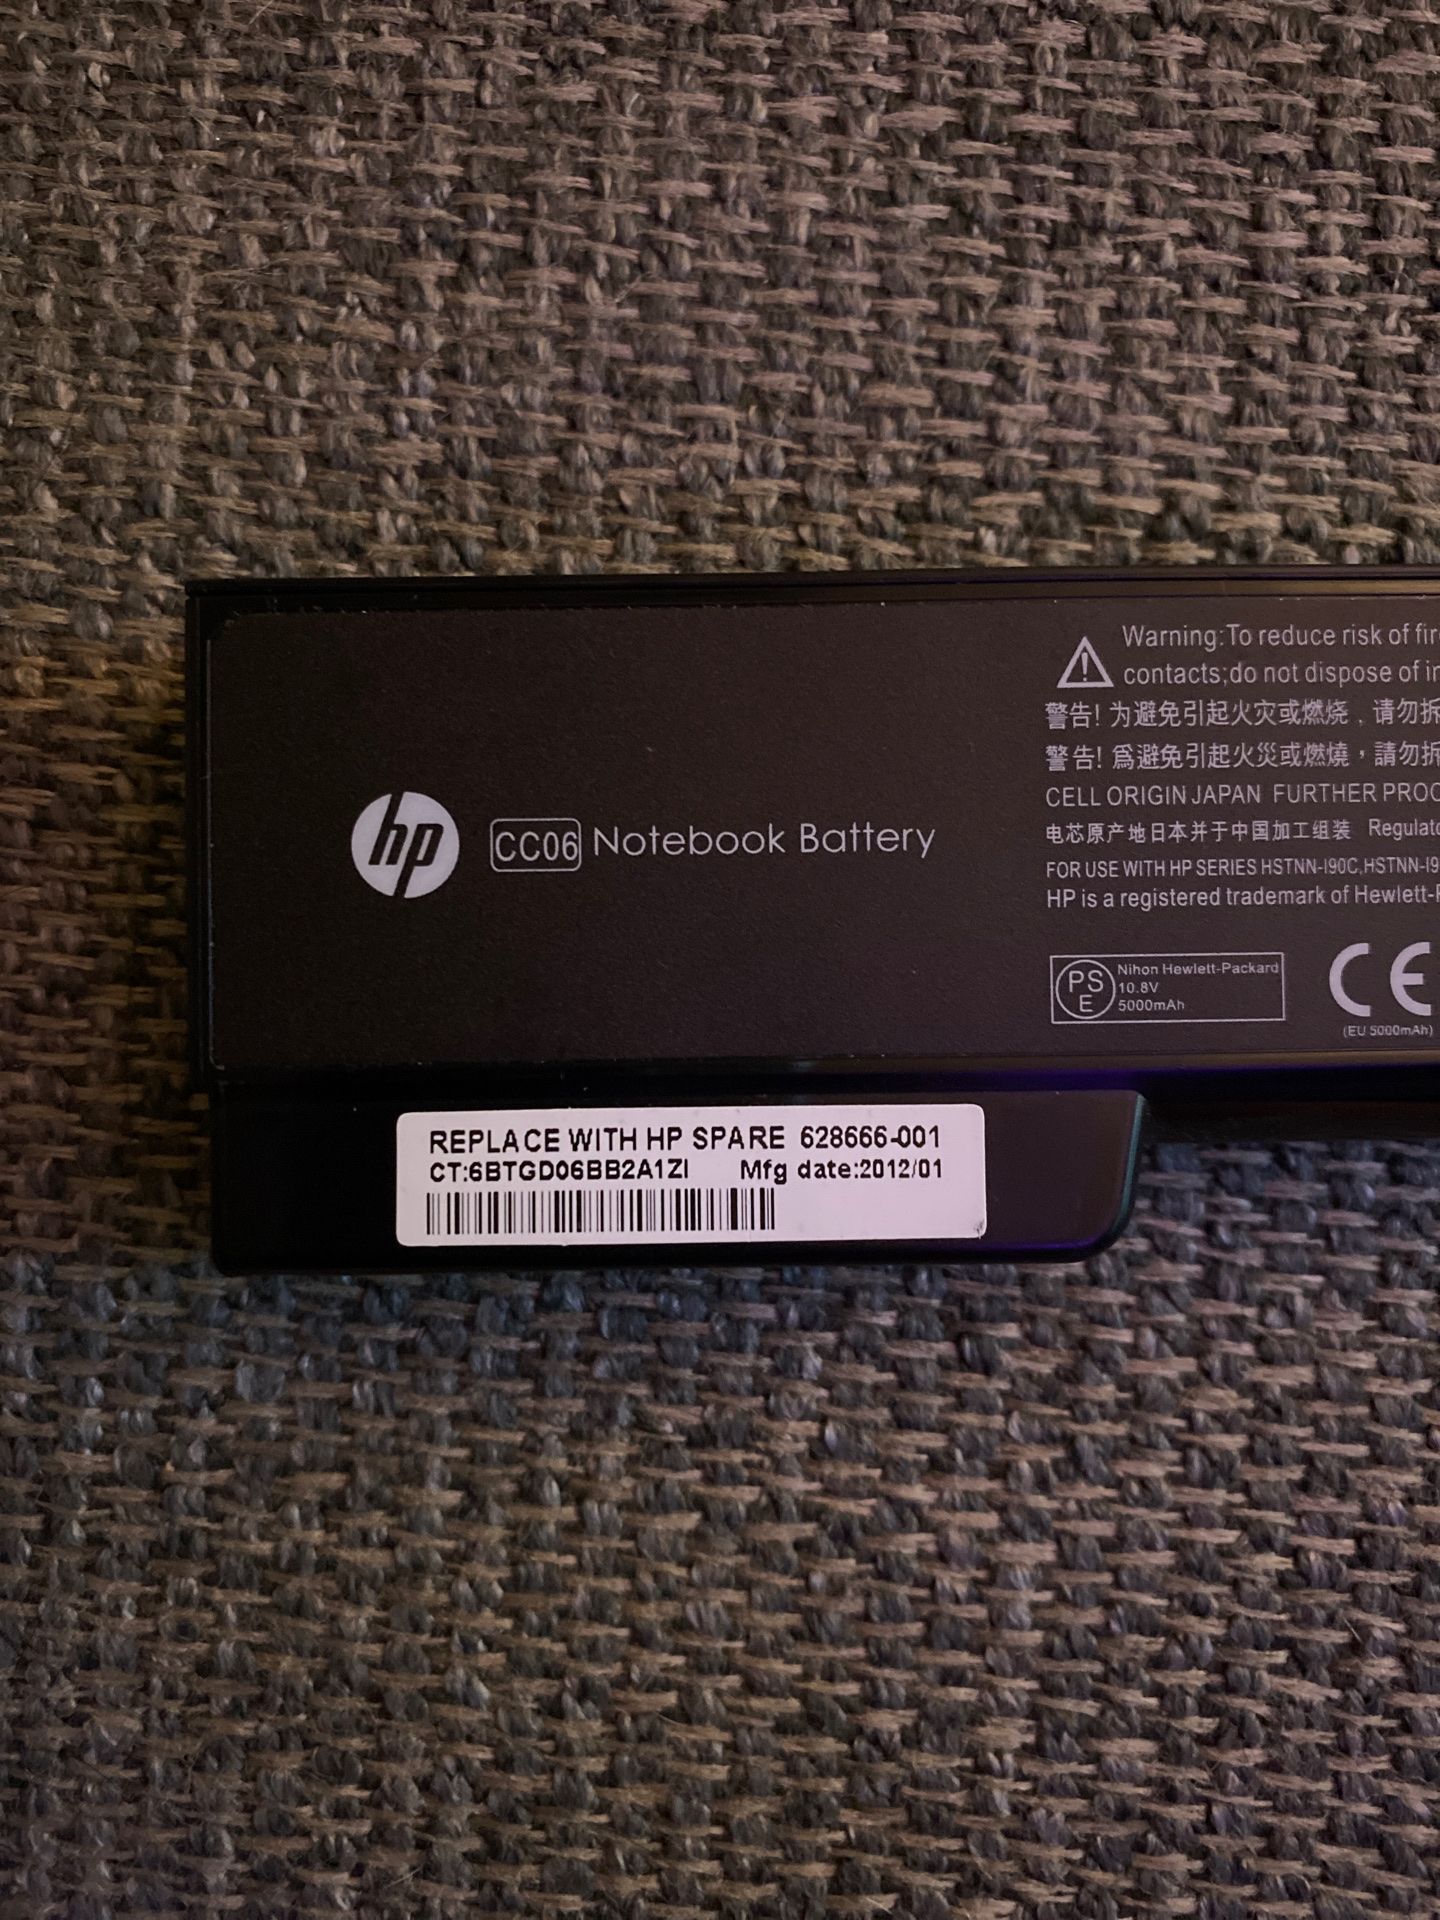 HP Notebook Battery - CC06